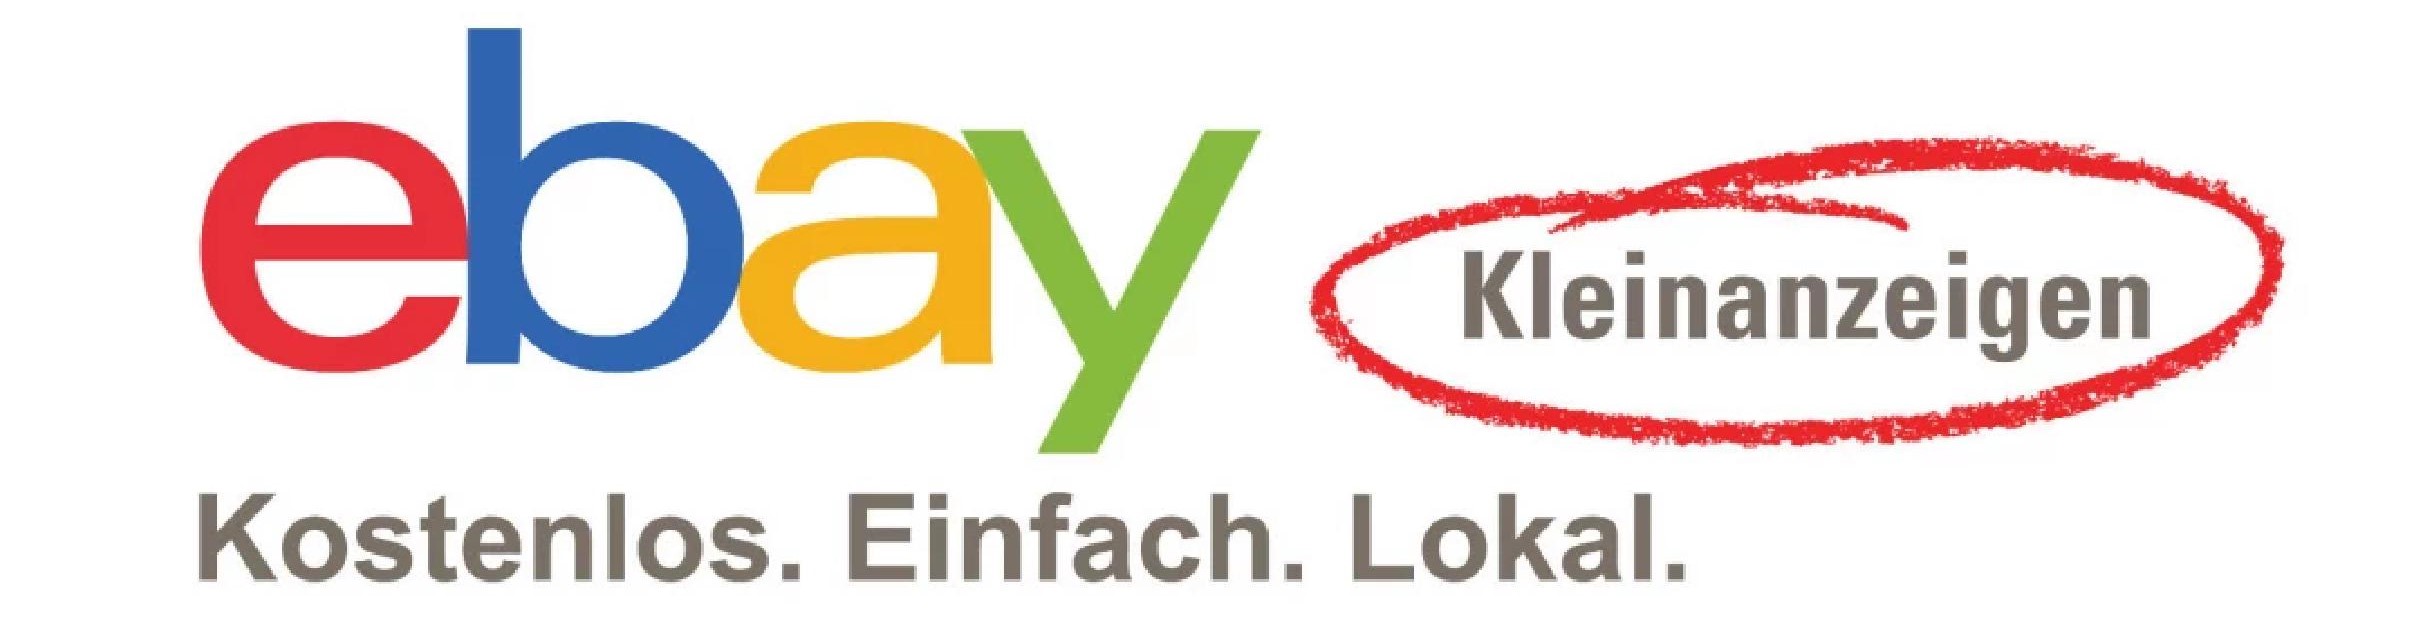 Ebay-Kleinanzeigen Logo